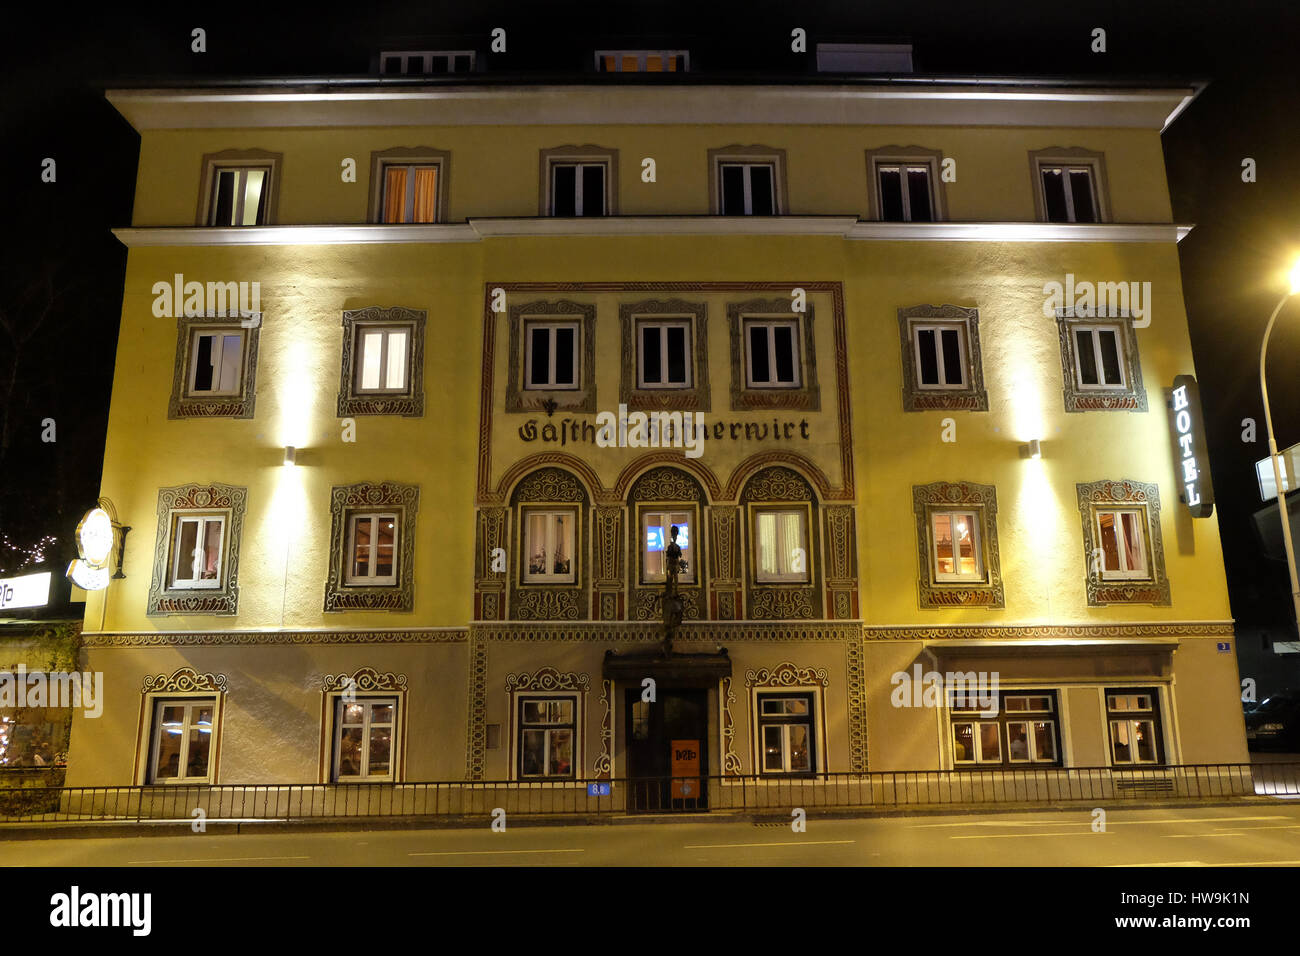 Hotel Hafnervirt, Hallein, Austria on December 13, 2014. Stock Photo